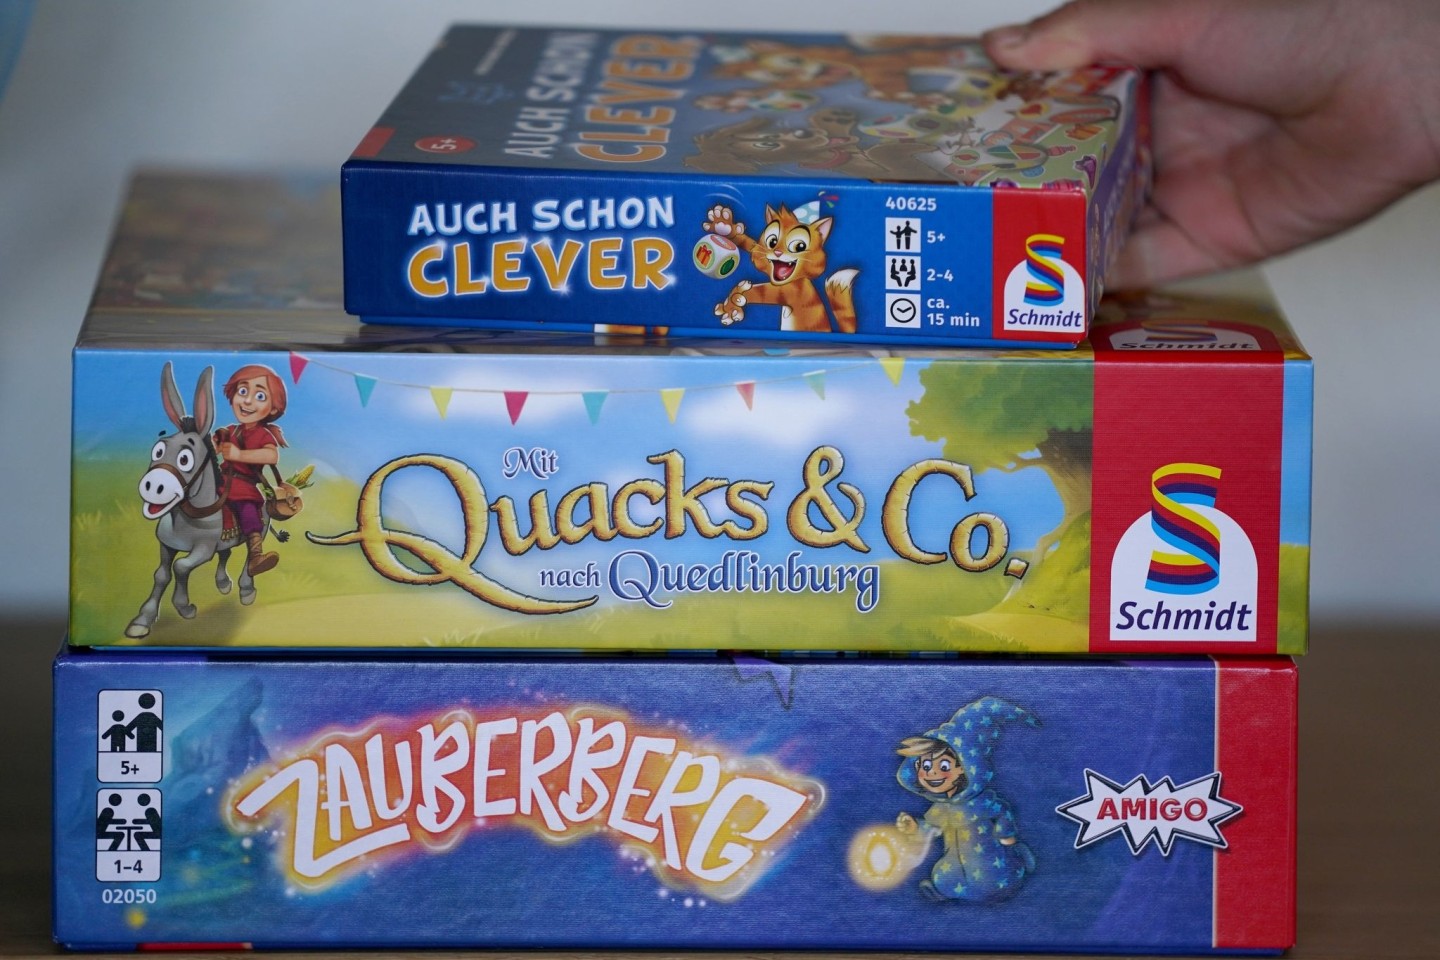 Die drei Kinderspiele «Auch schon clever» (Wolfgang Warsch/Schmidt Spiele), «Mit Quacks und Co. nach Quedlinburg» (Wolfgang Warsch/Schmidt Spiele) und «Zauberberg» (Amigo).